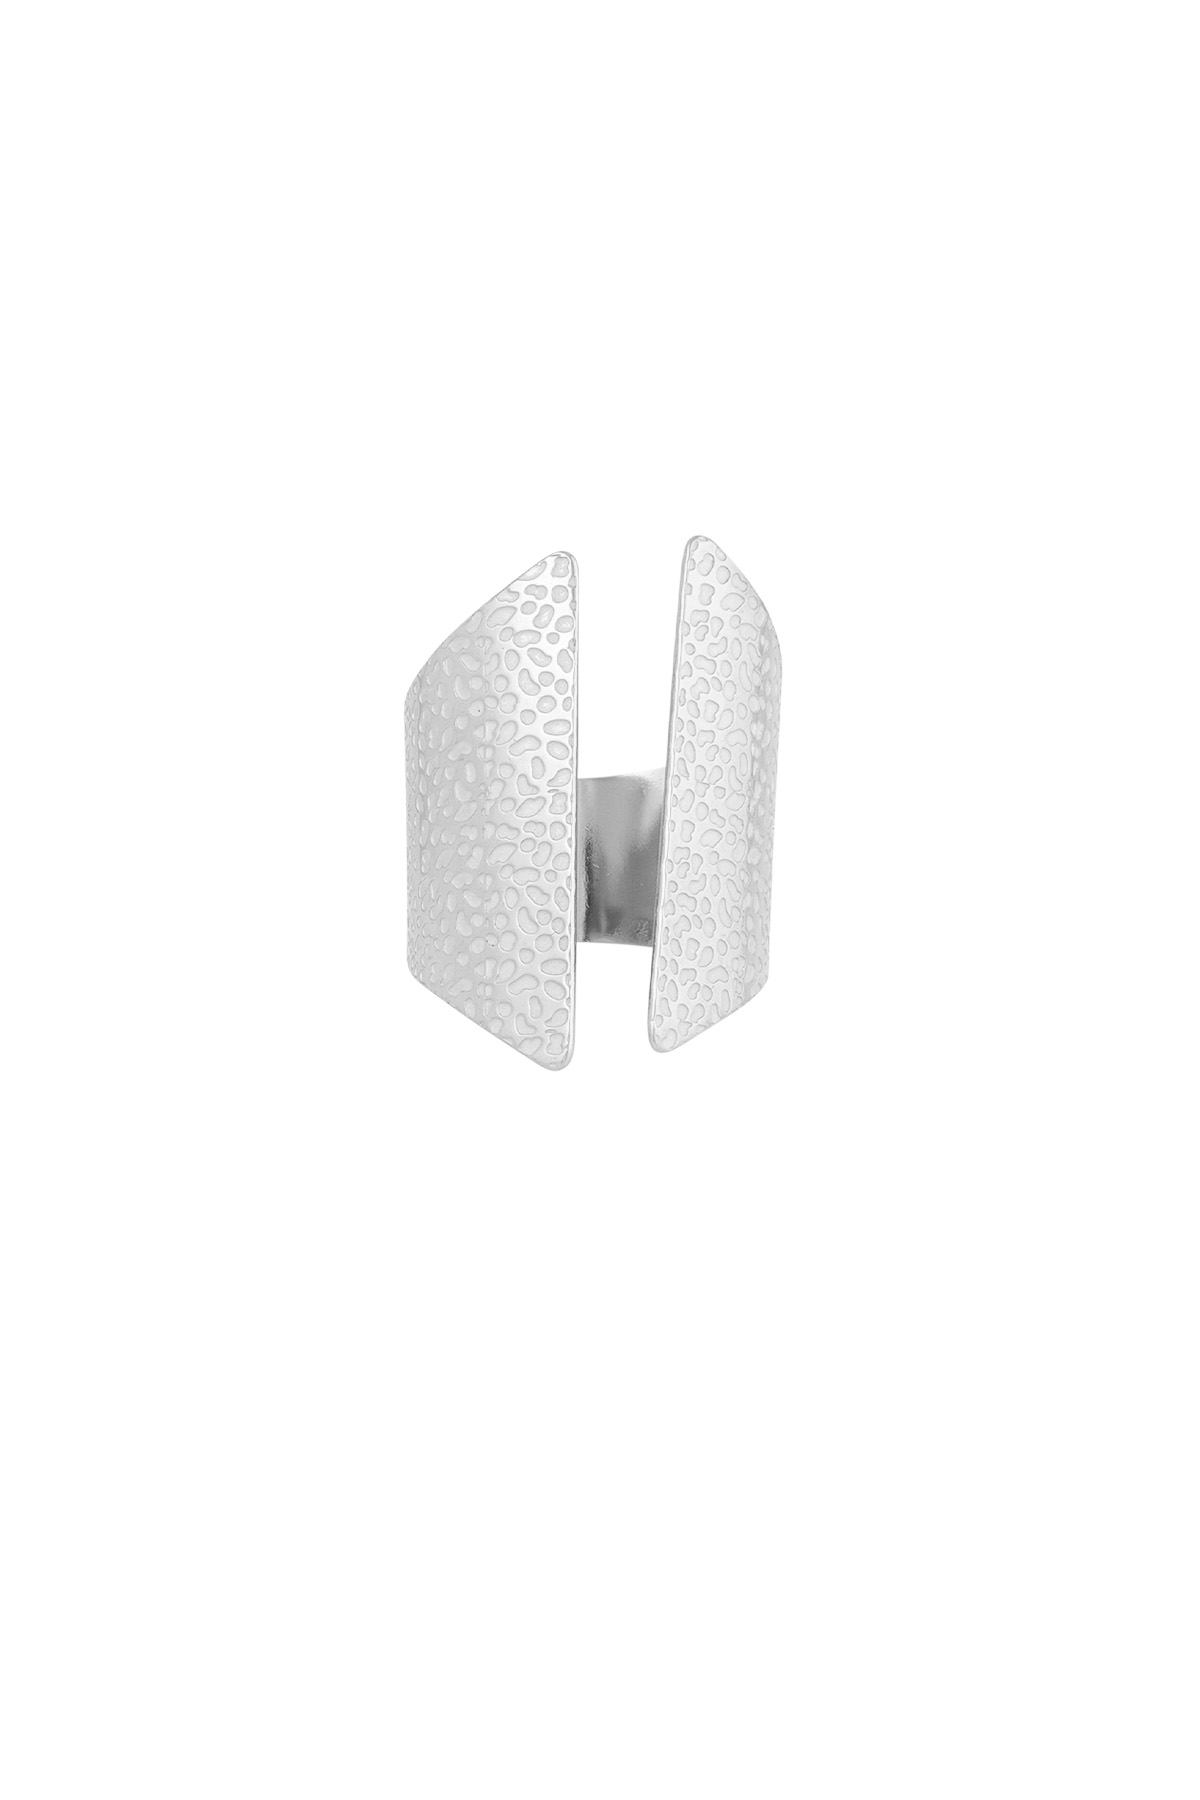 Estructura de anillo de caja básica - plata